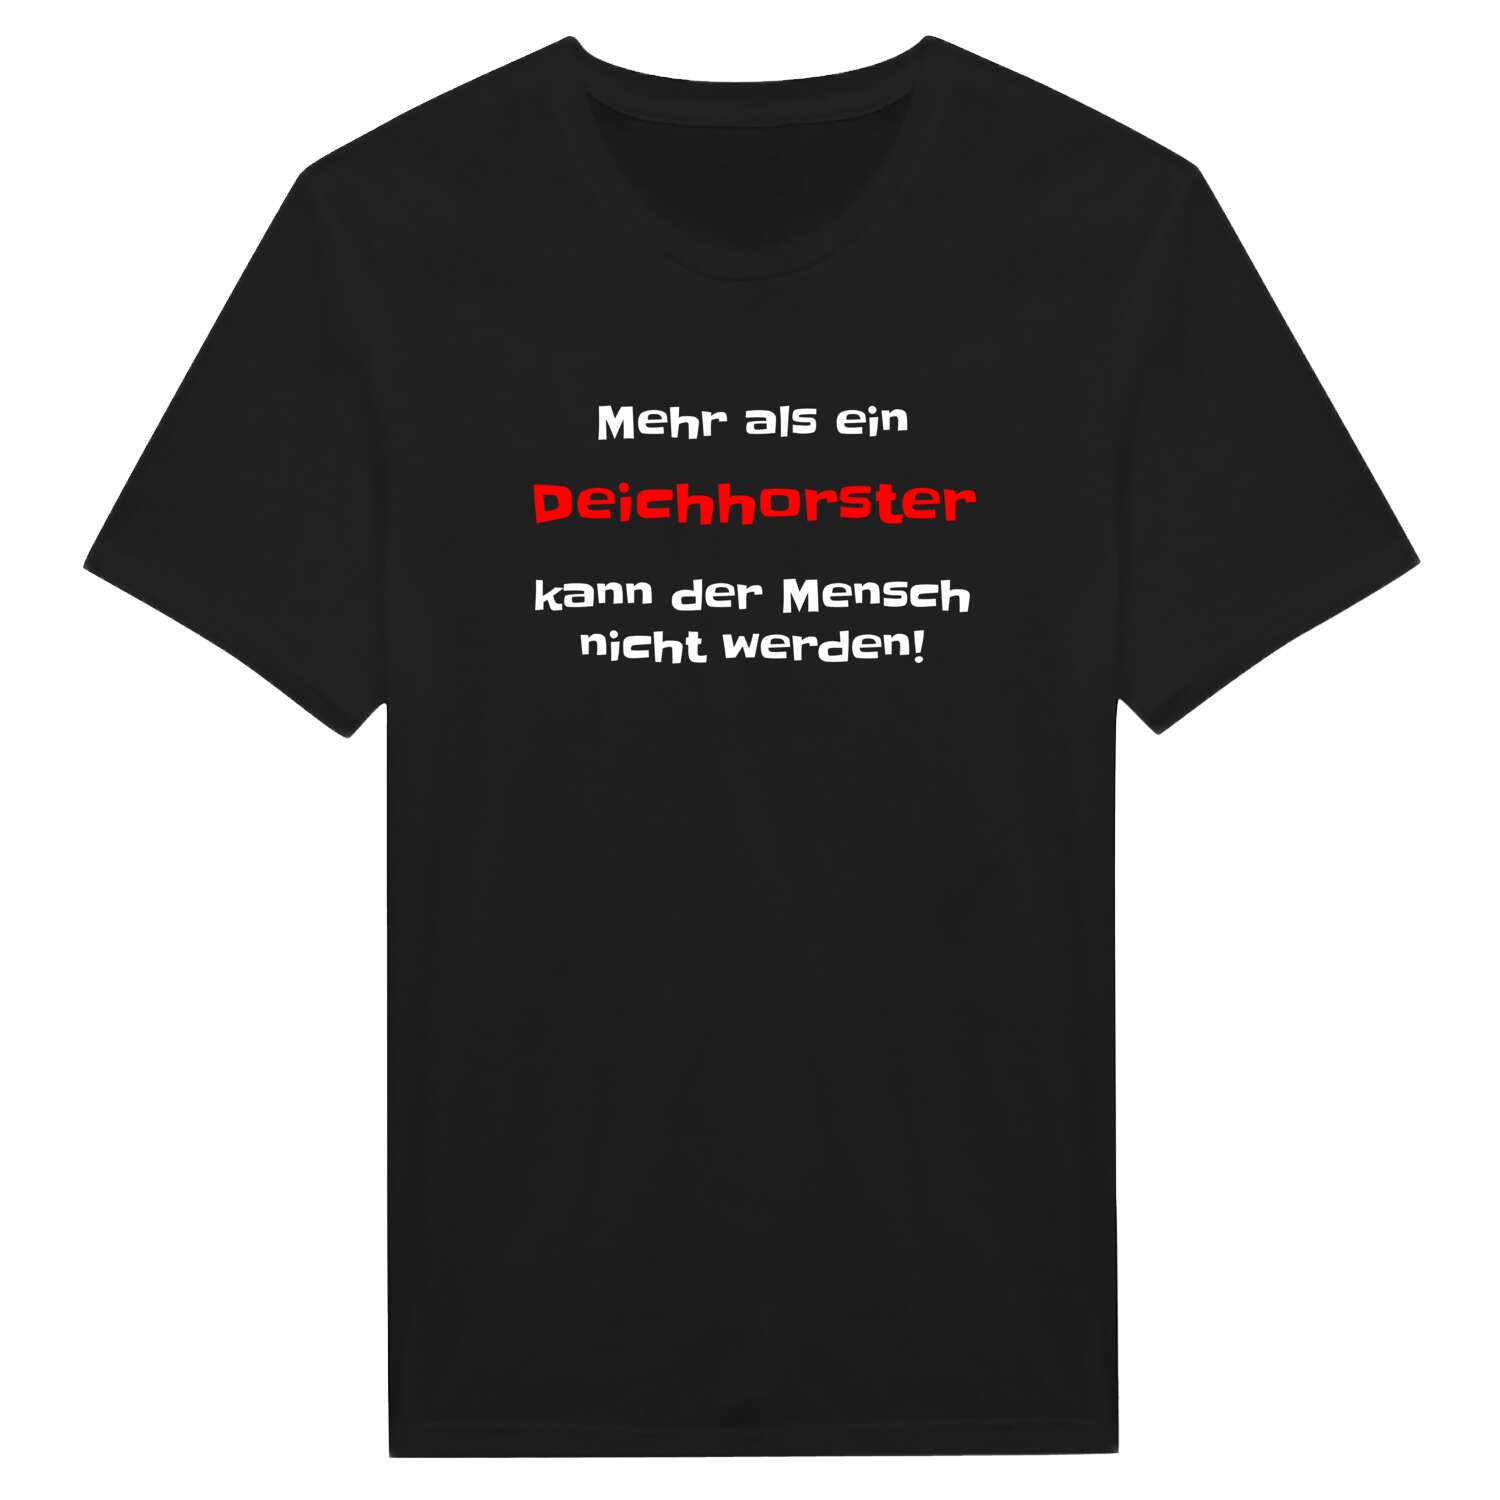 Deichhorst T-Shirt »Mehr als ein«